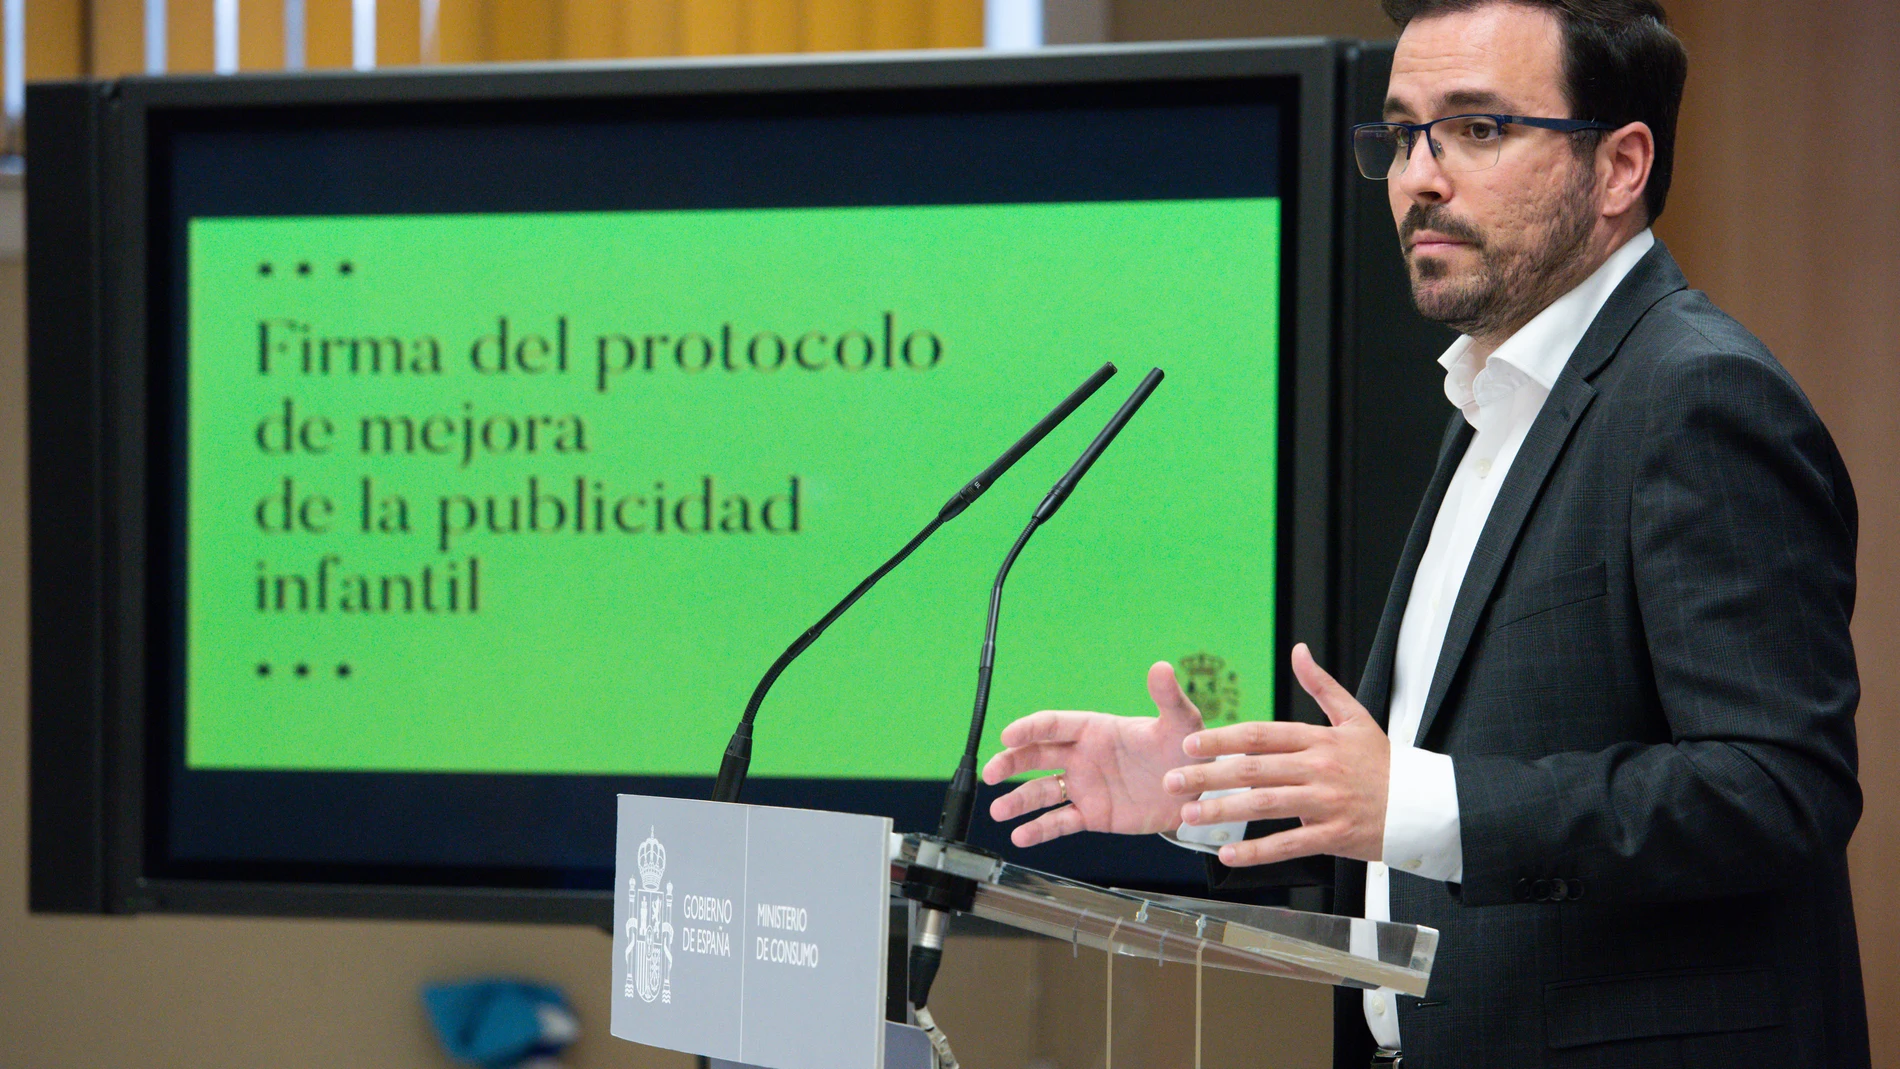 El ministro de Consumo, Alberto Garzón, presenta un protocolo con el sector del juguete para impulsar la igualdad